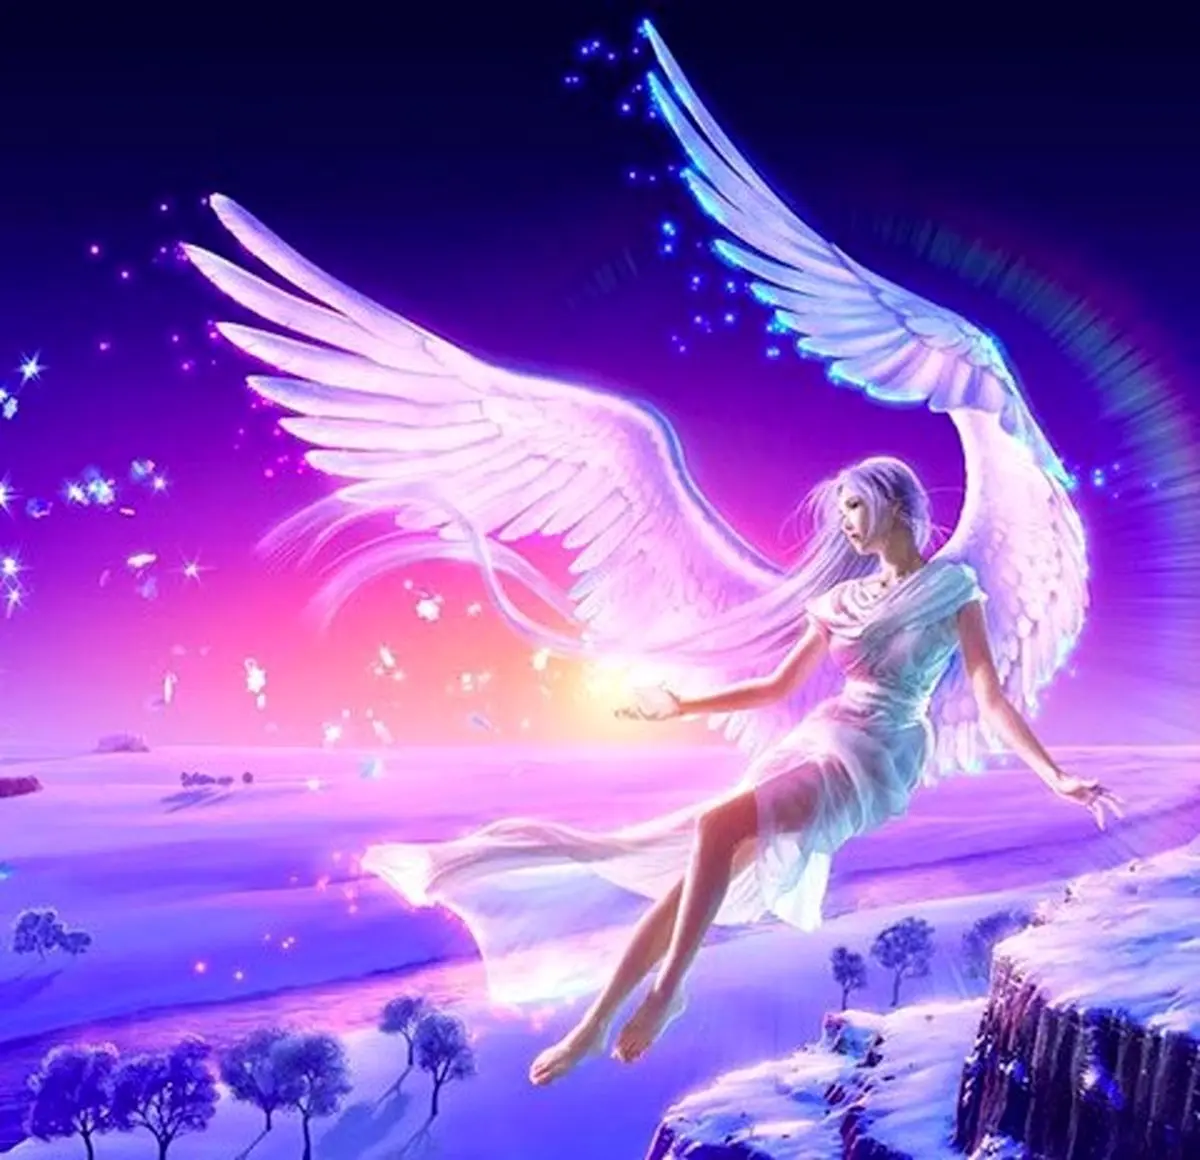 فال فرشتگان 13 آبان ماه | فرشتگان برای شما چه پیام مثبتی دارند؟